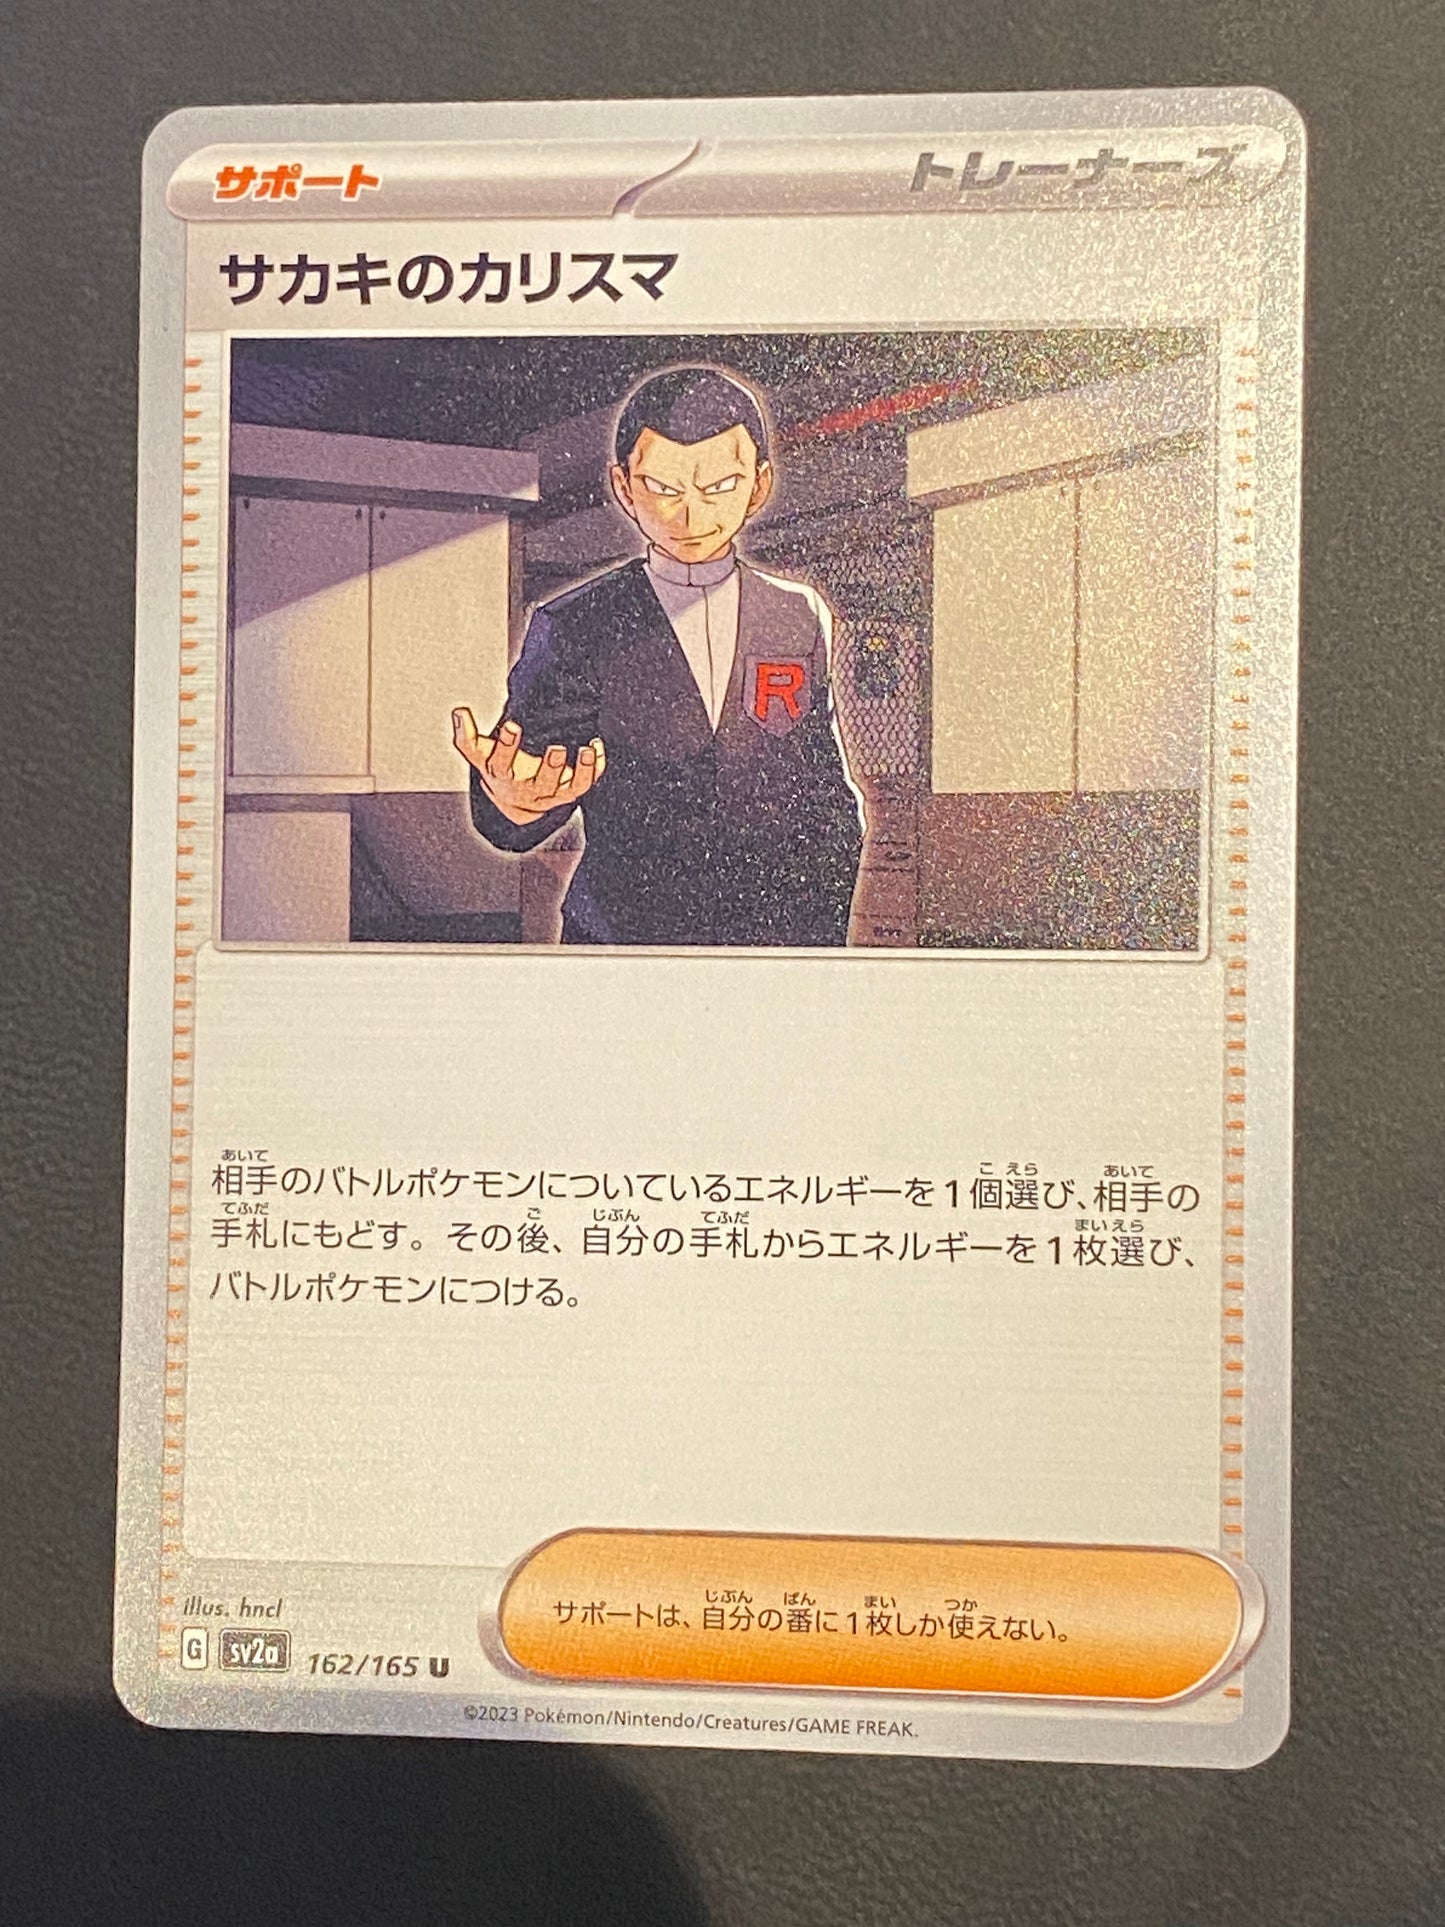 Giovanni’s Charisma - Pokémon Card 151 Japanese